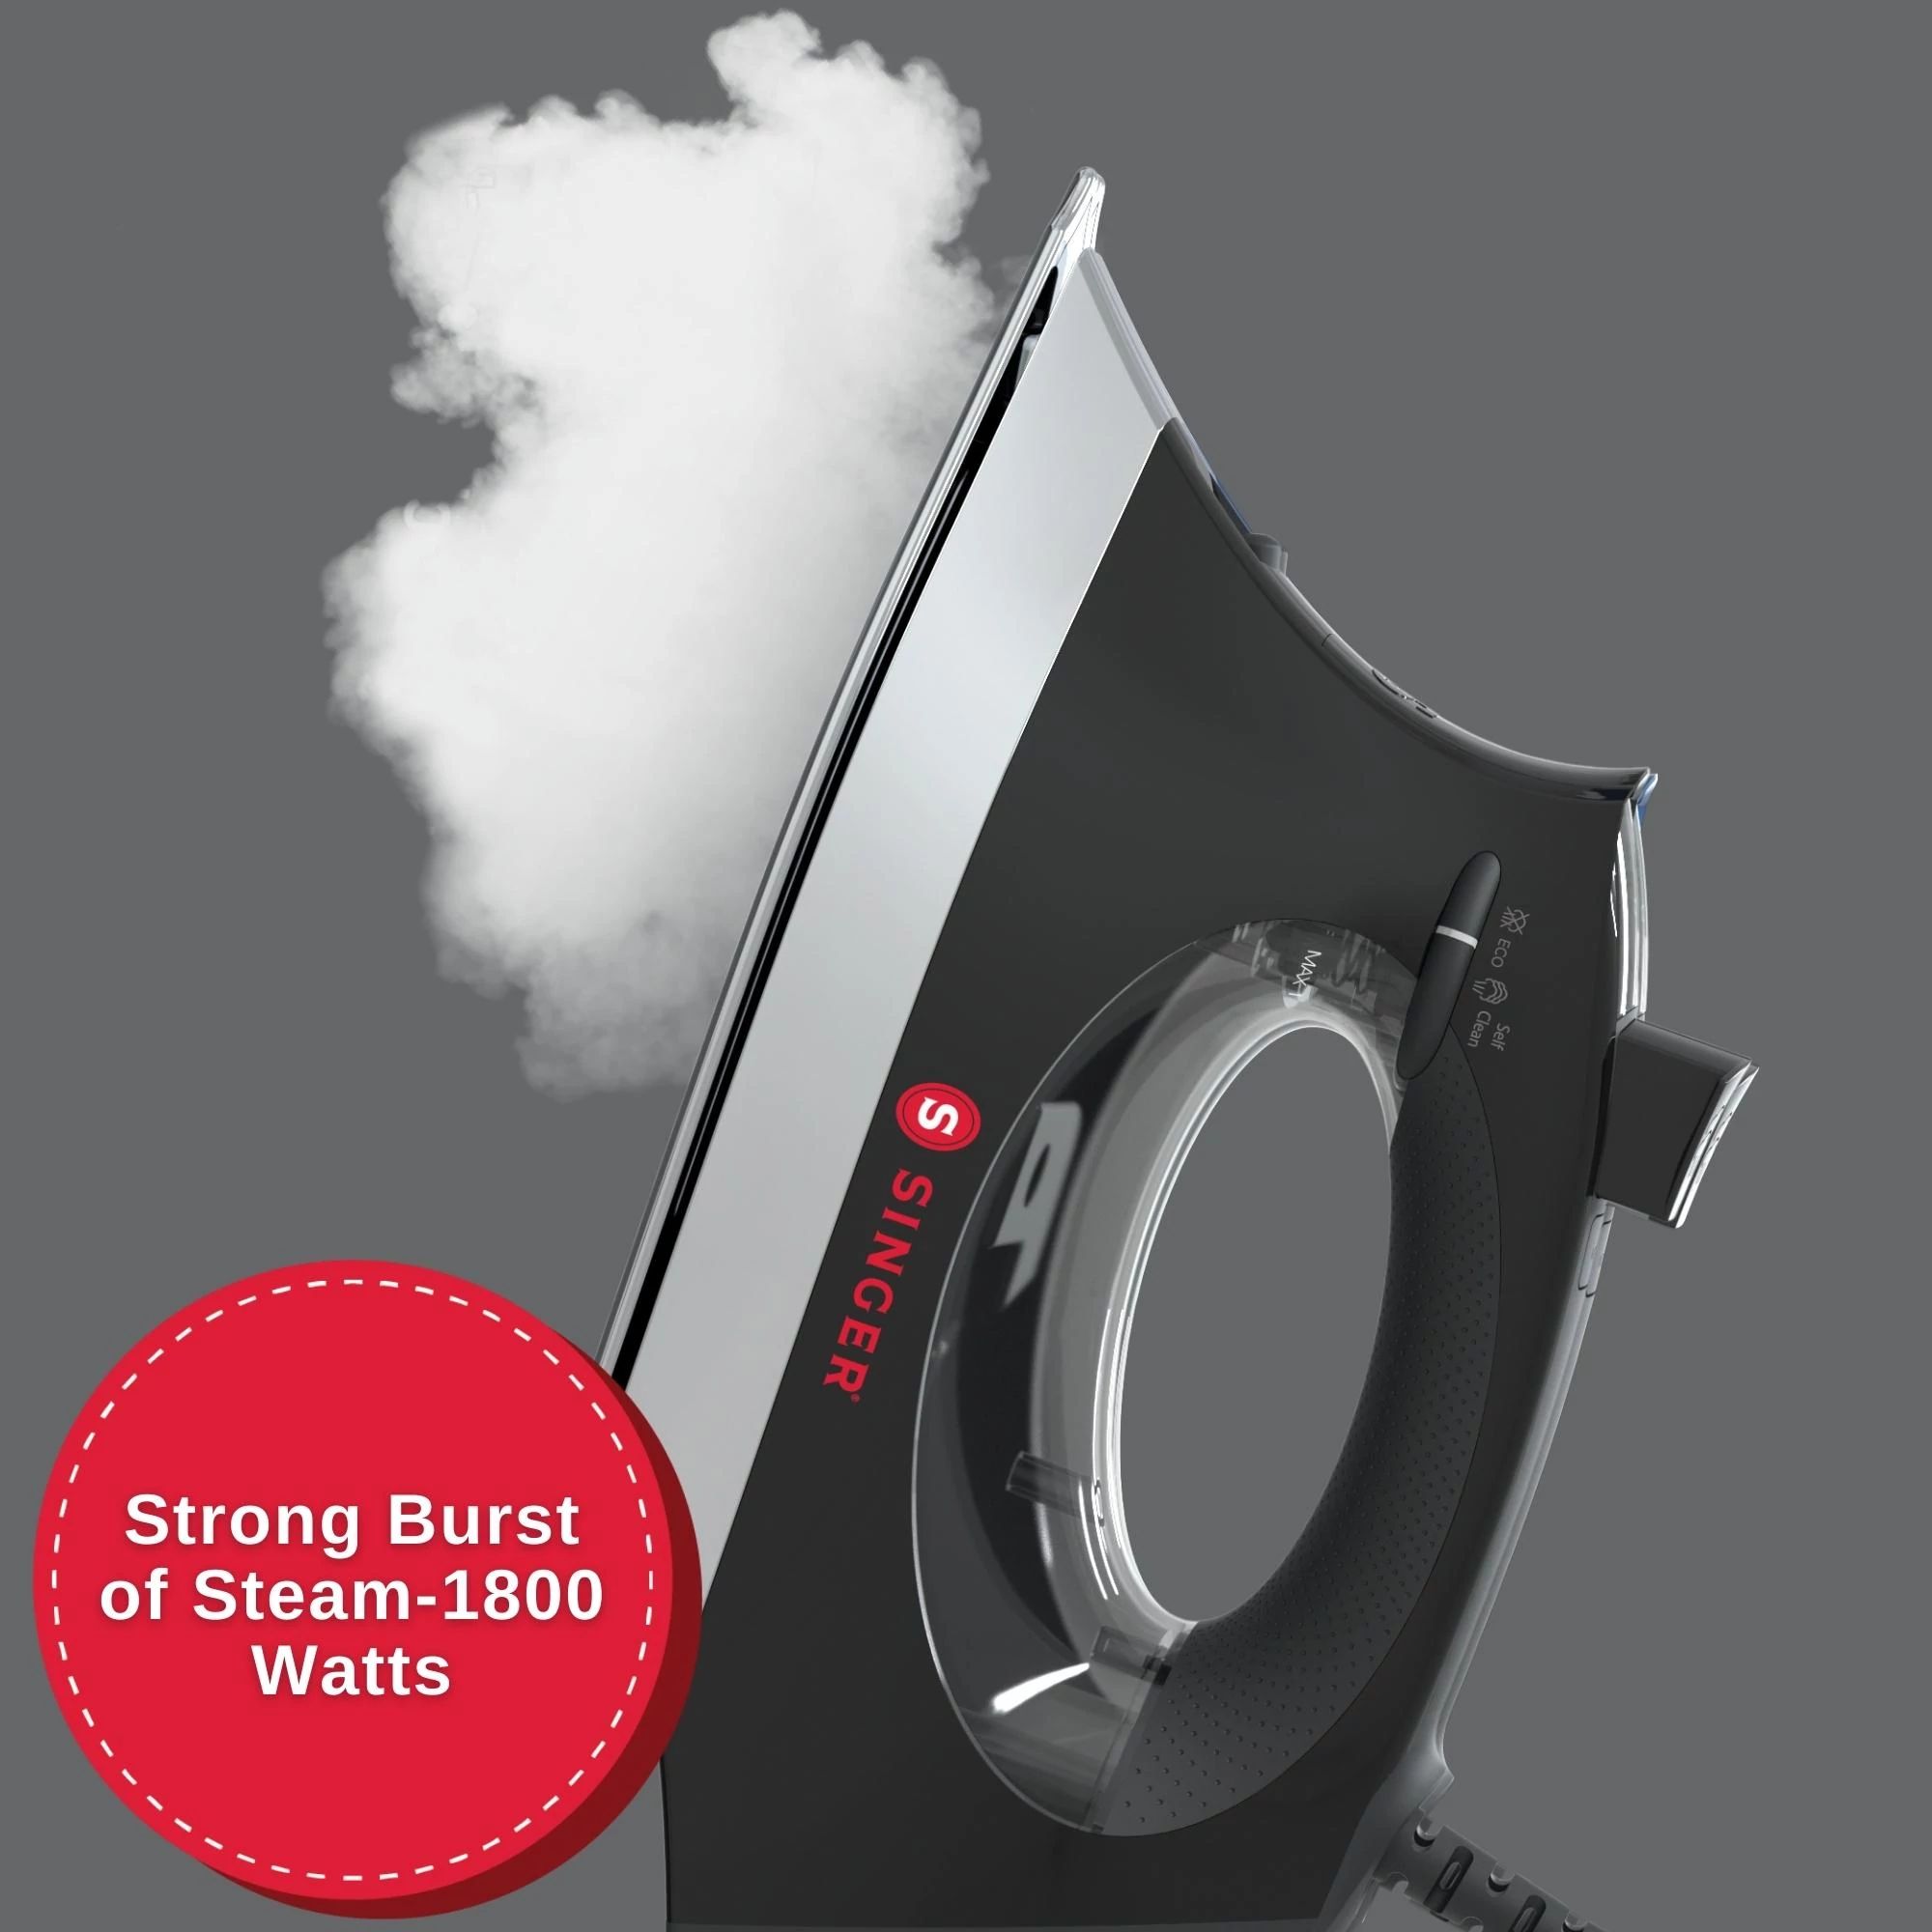 SINGER SteamCraft Plus 2.0 Iron Black